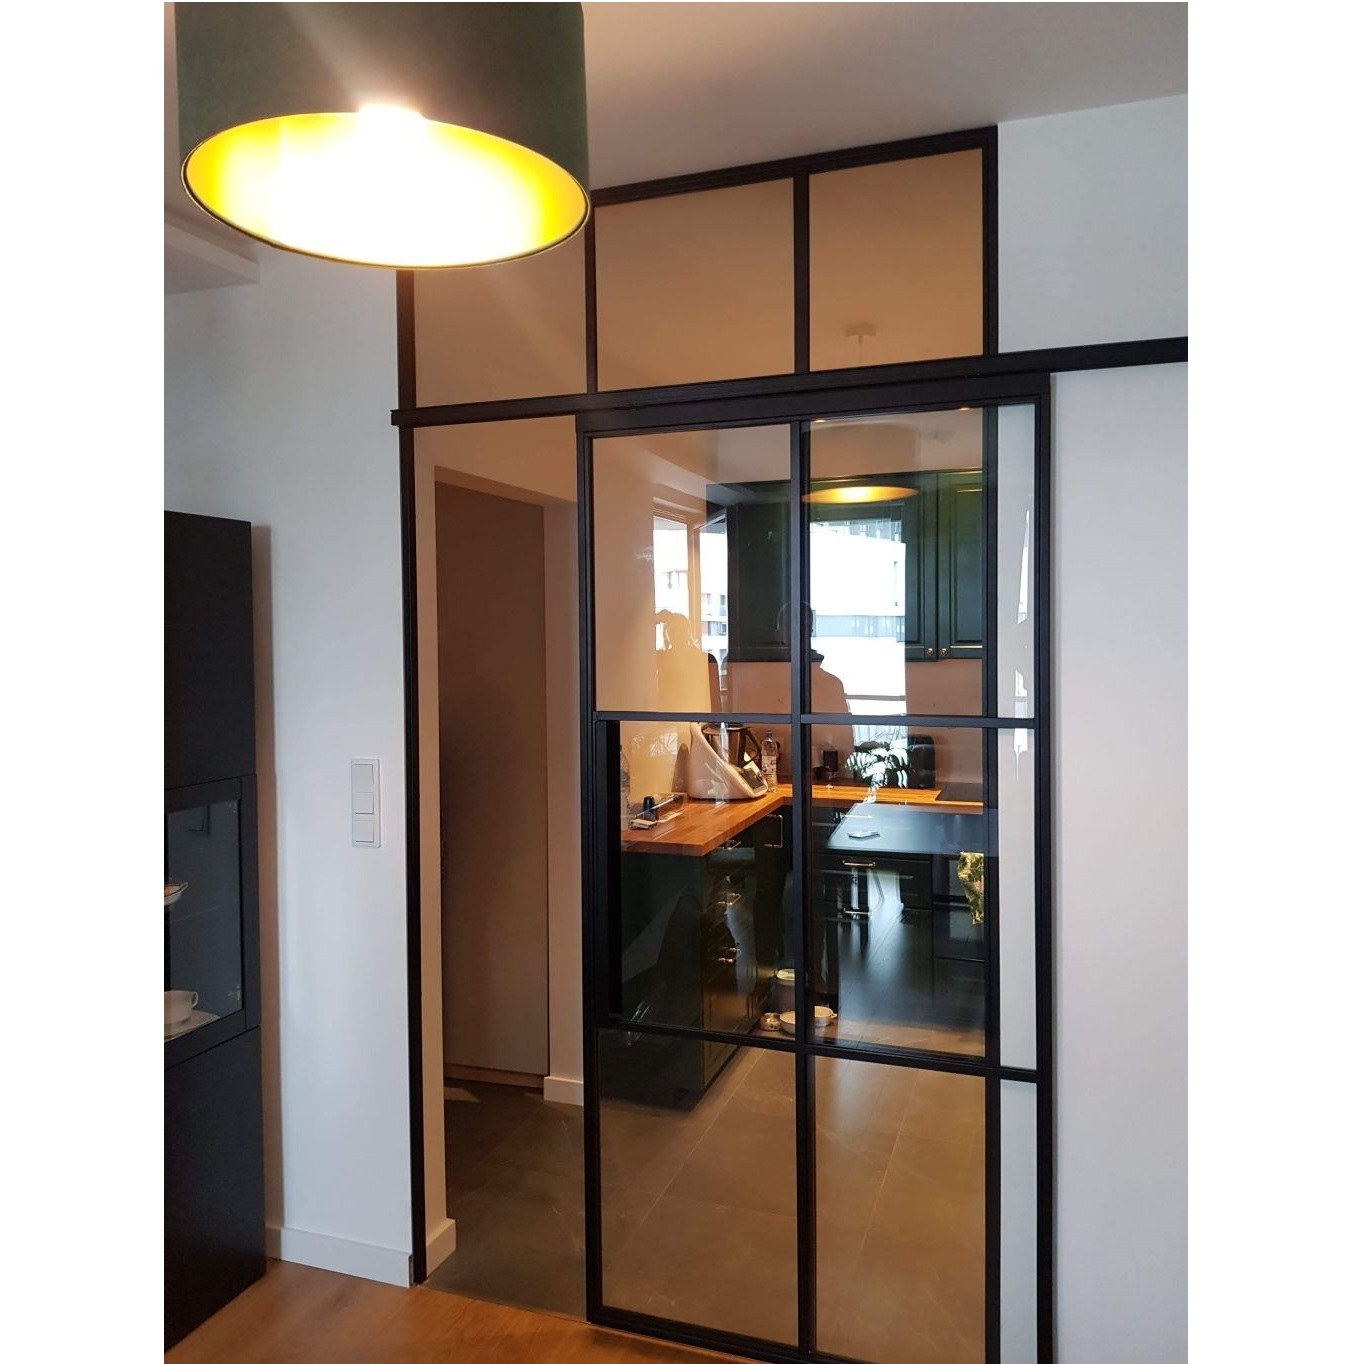 Drzwi przesuwne loft przeszklone dla p. Joanny B. realizacja doświetlająca  ślepą kuchnią w mieszkaniu w Krakowie. 